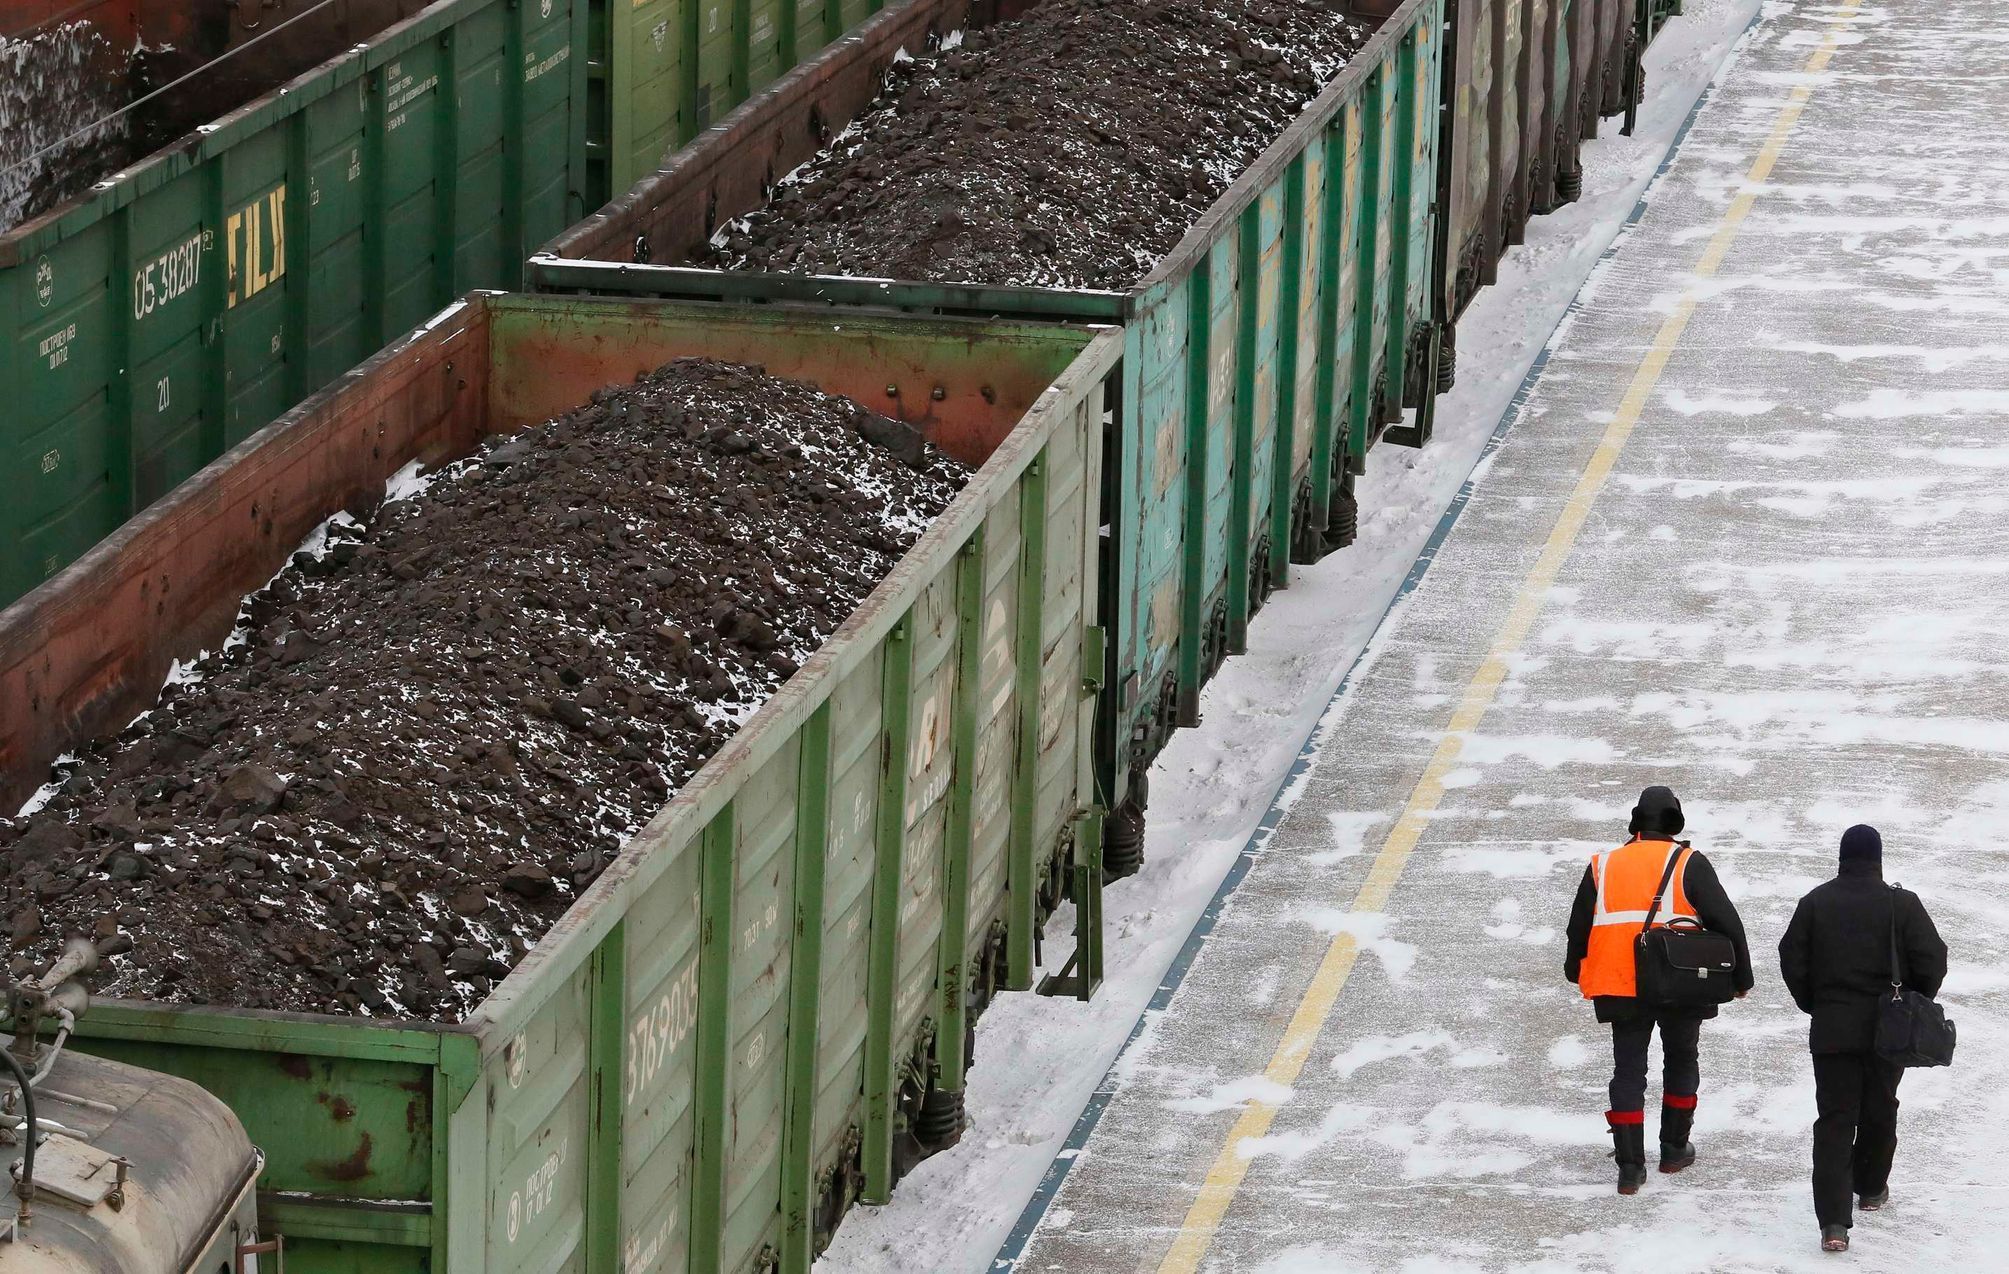 Vagony s uhlím na nádraží v ruském městě Zlobino.